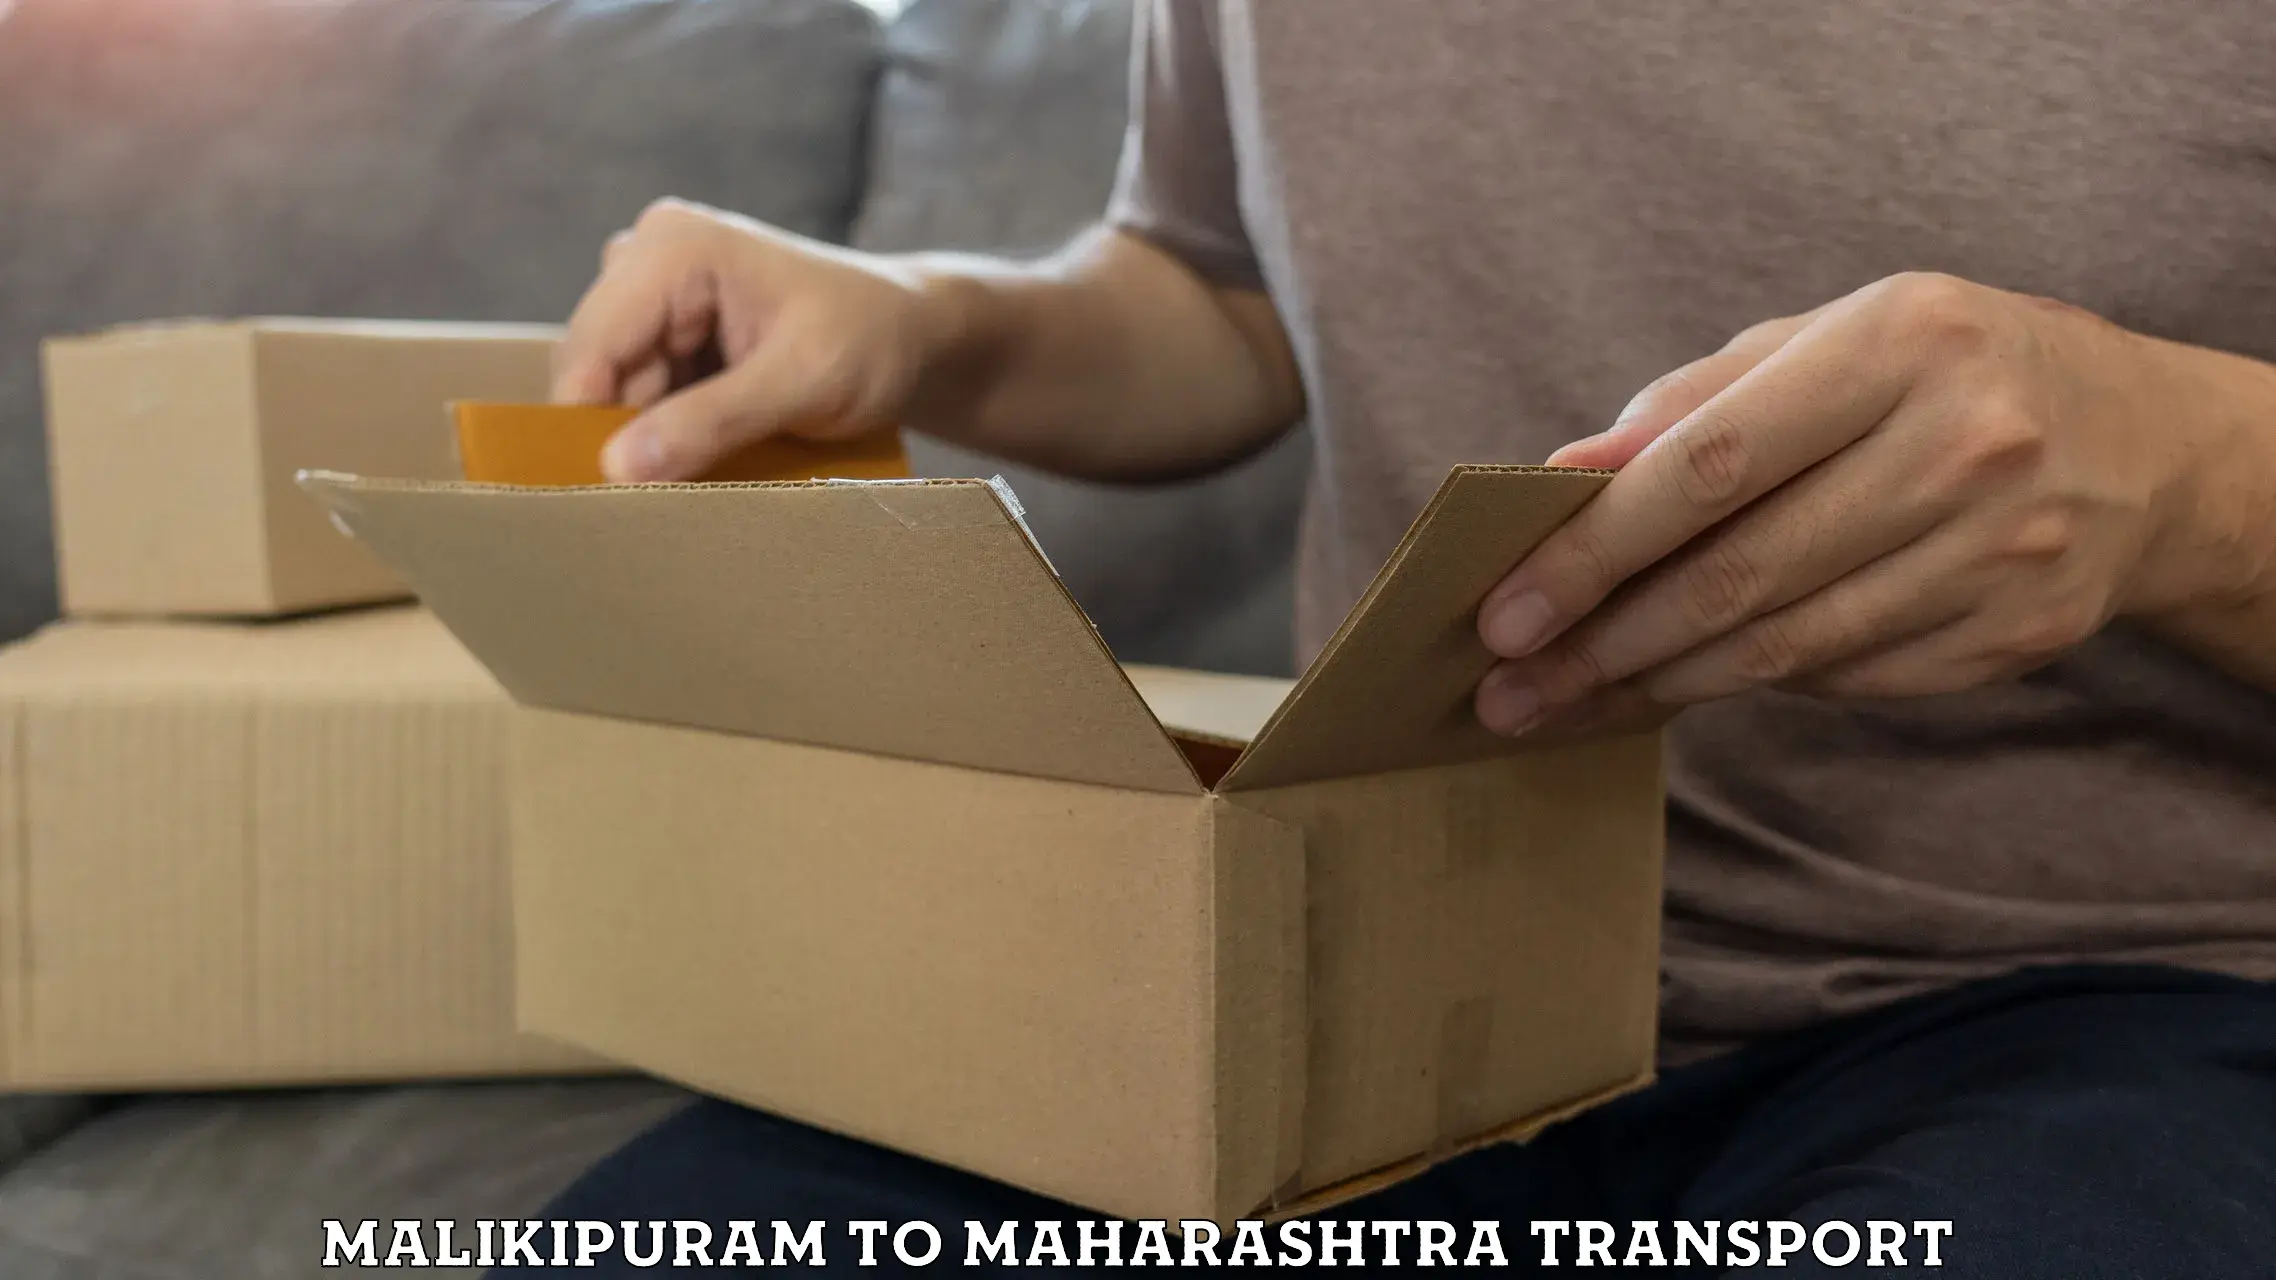 Express transport services Malikipuram to Mantha